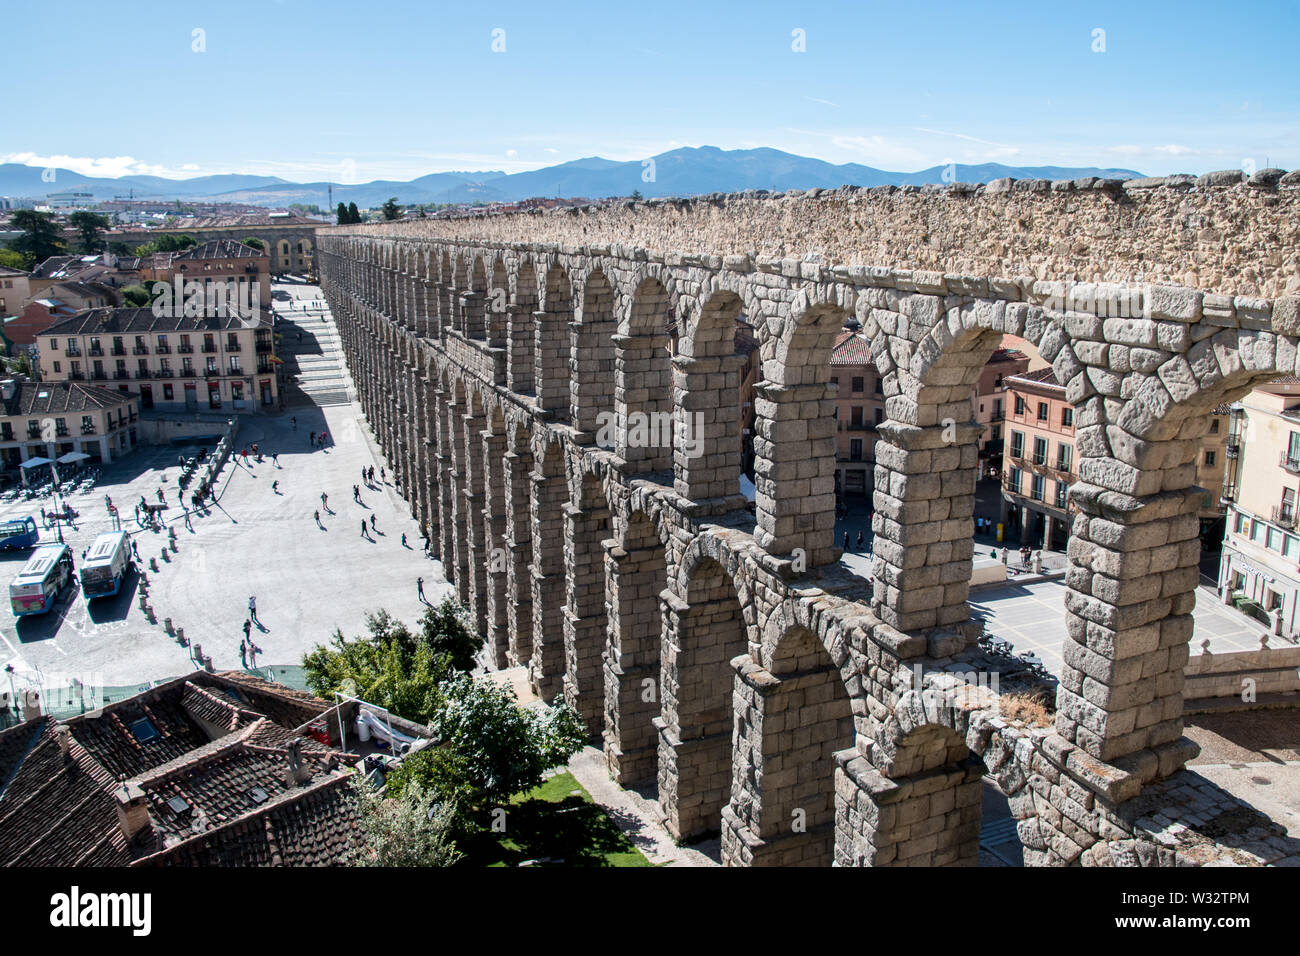 Das Aquädukt von Segovia ist eine römische Aquädukt in Segovia, Spanien. Es ist eine der am besten erhaltenen römischen Aquädukte erhöht und das Symbol von Segovia. Stockfoto